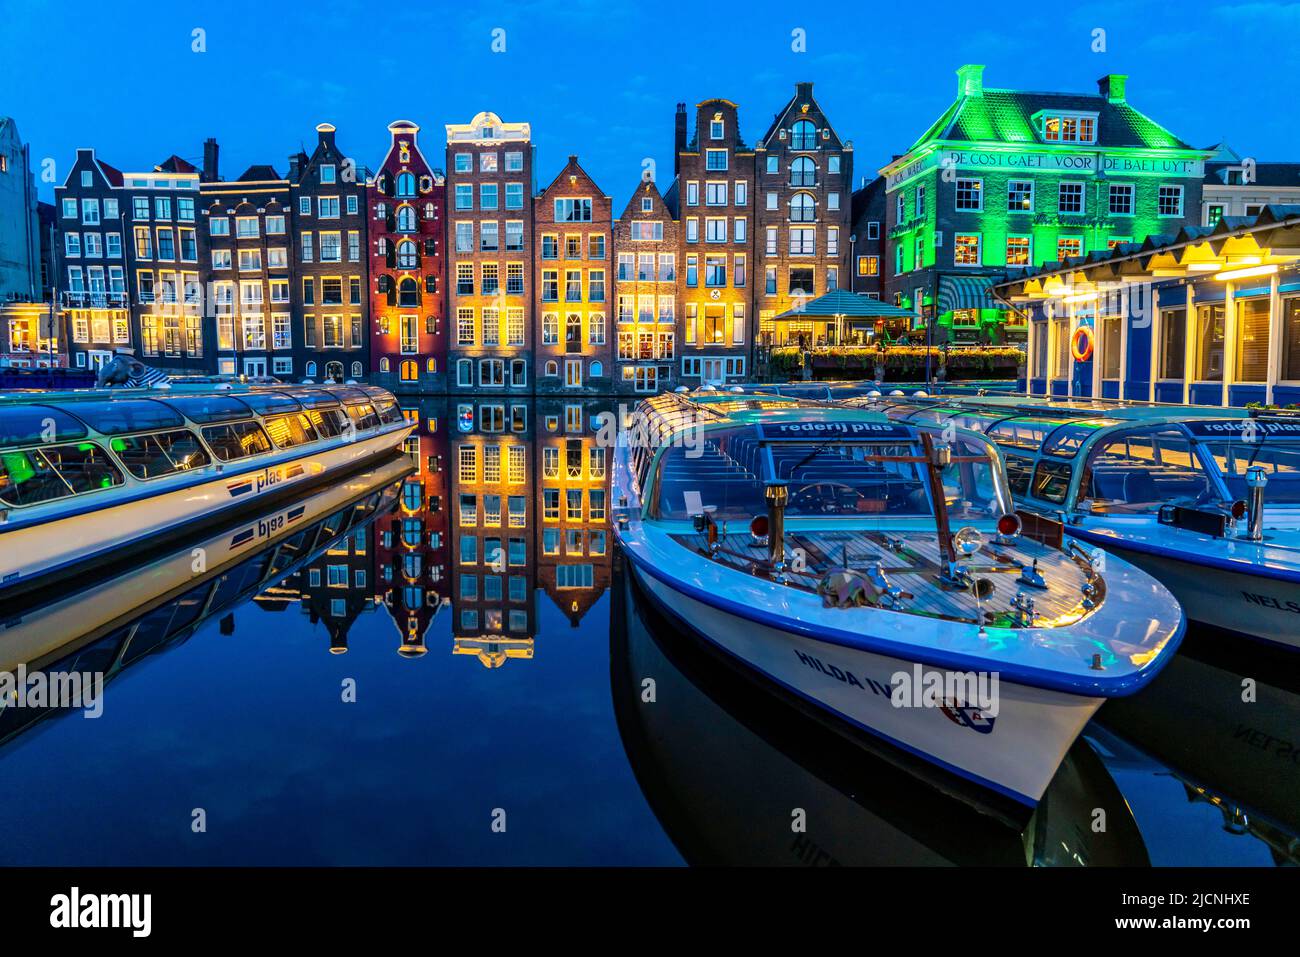 Kanalhäuser am Damrak, im Zentrum der Altstadt von Amsterdam, Hafen, Ausgangspunkt vieler Kanaltouren, Abend, Niederlande, Stockfoto